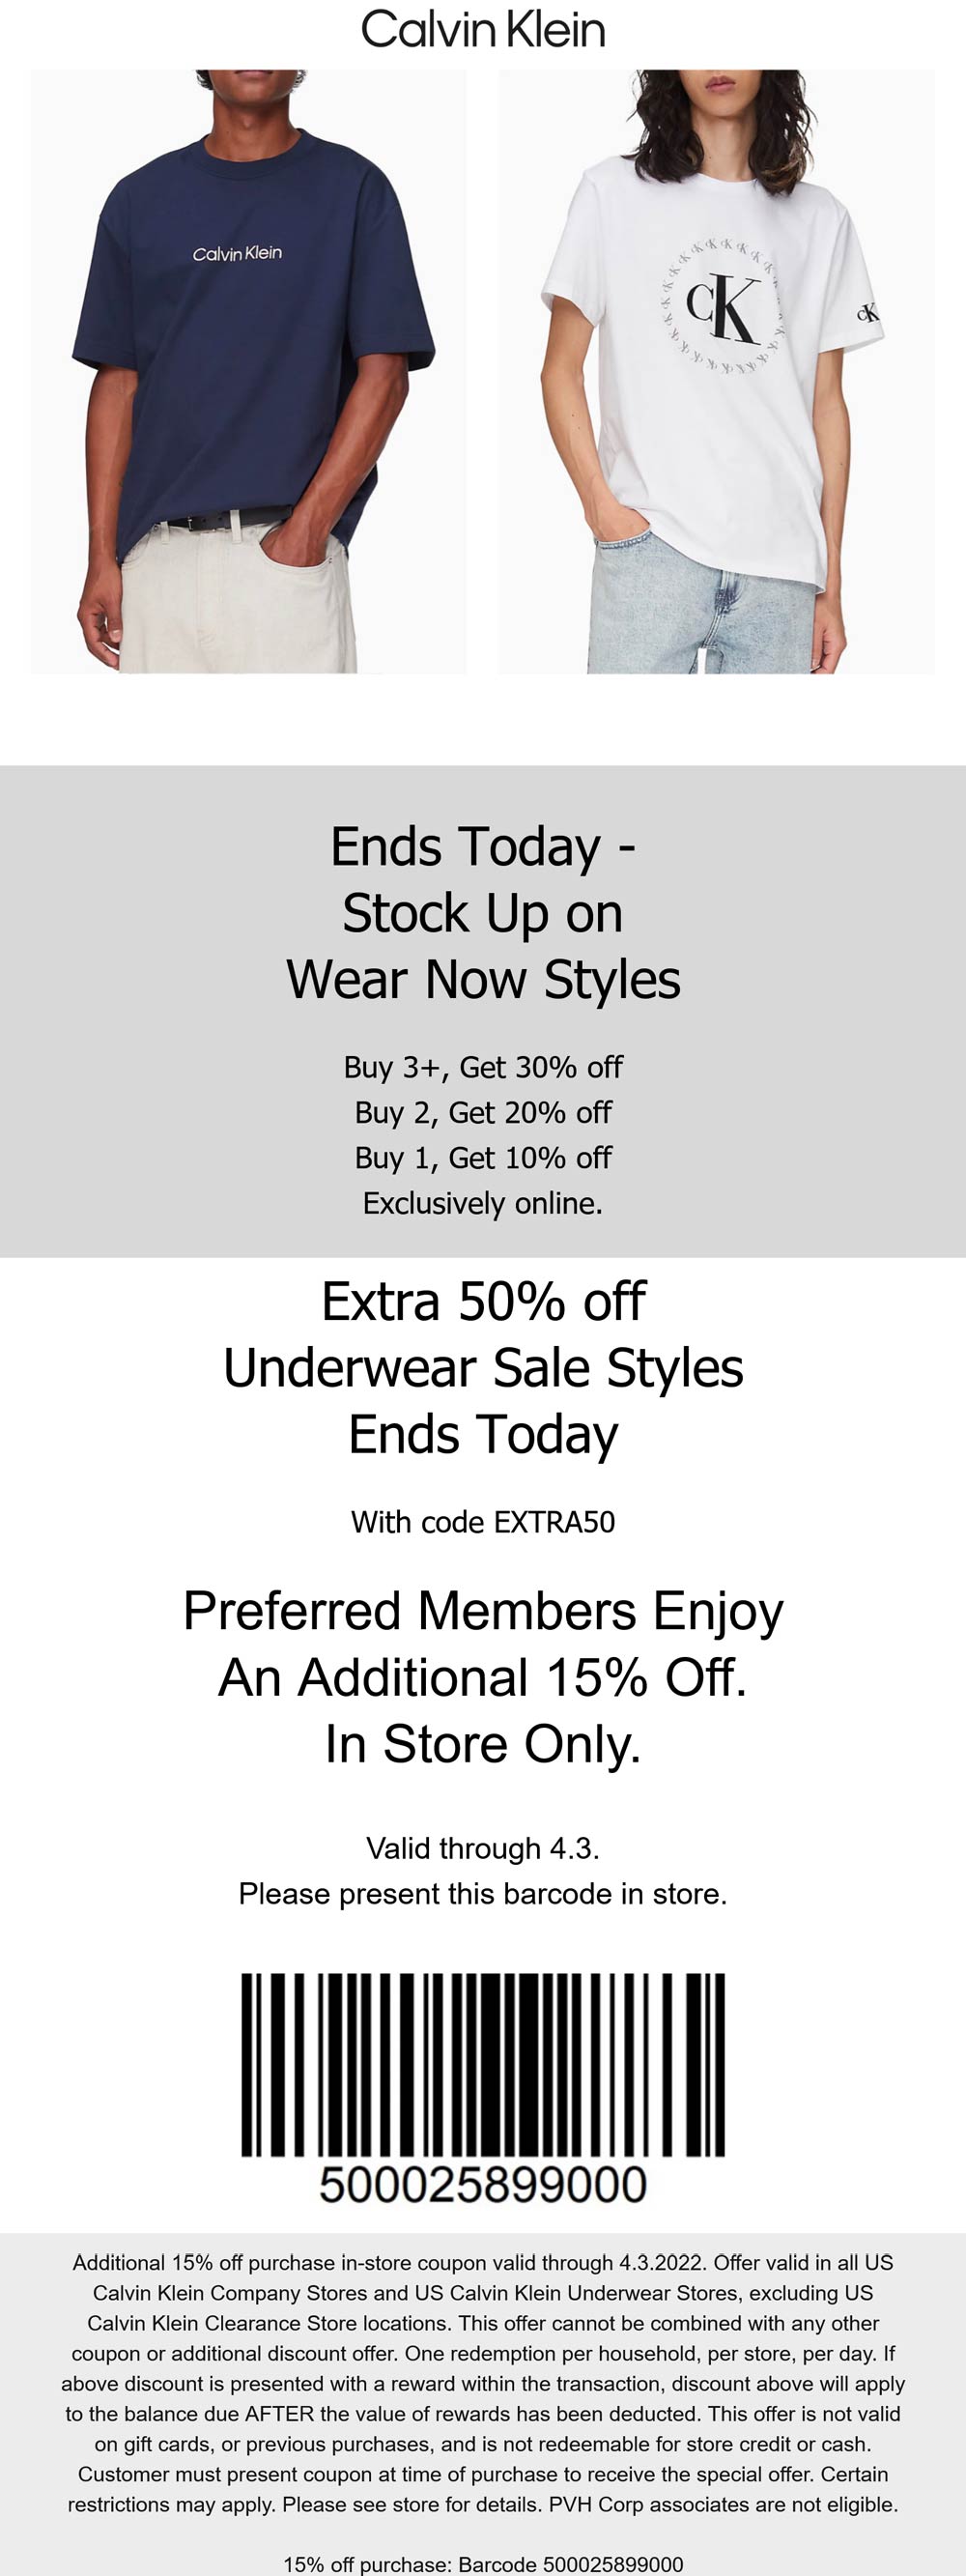 Calvin Klein stores Coupon  50% off underwear today at Calvin Klein via promo code EXTRA50 #calvinklein 